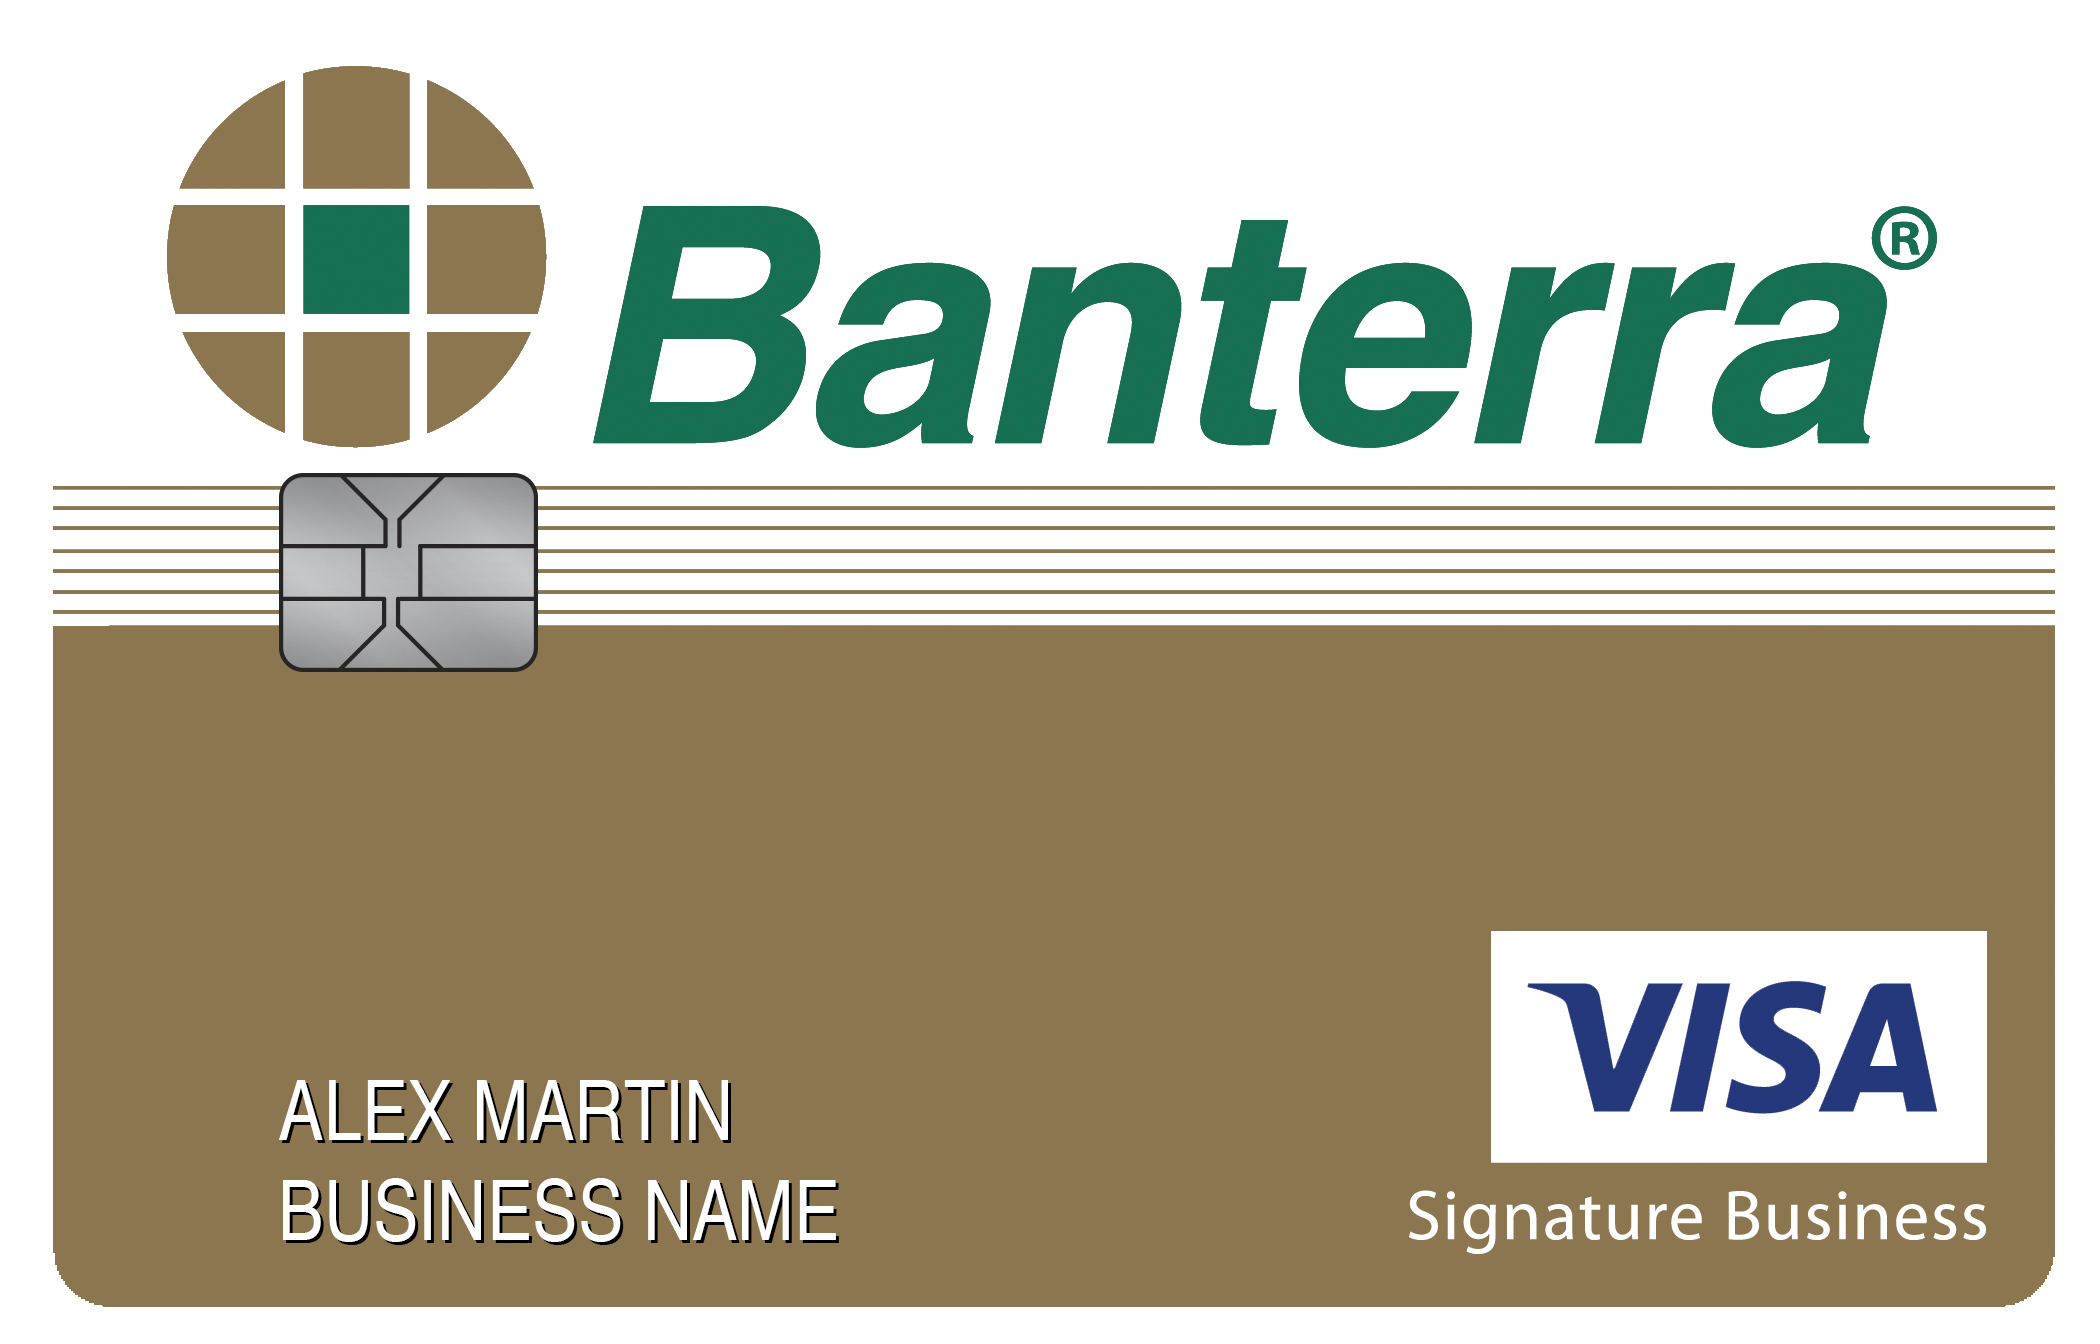 Banterra Bank